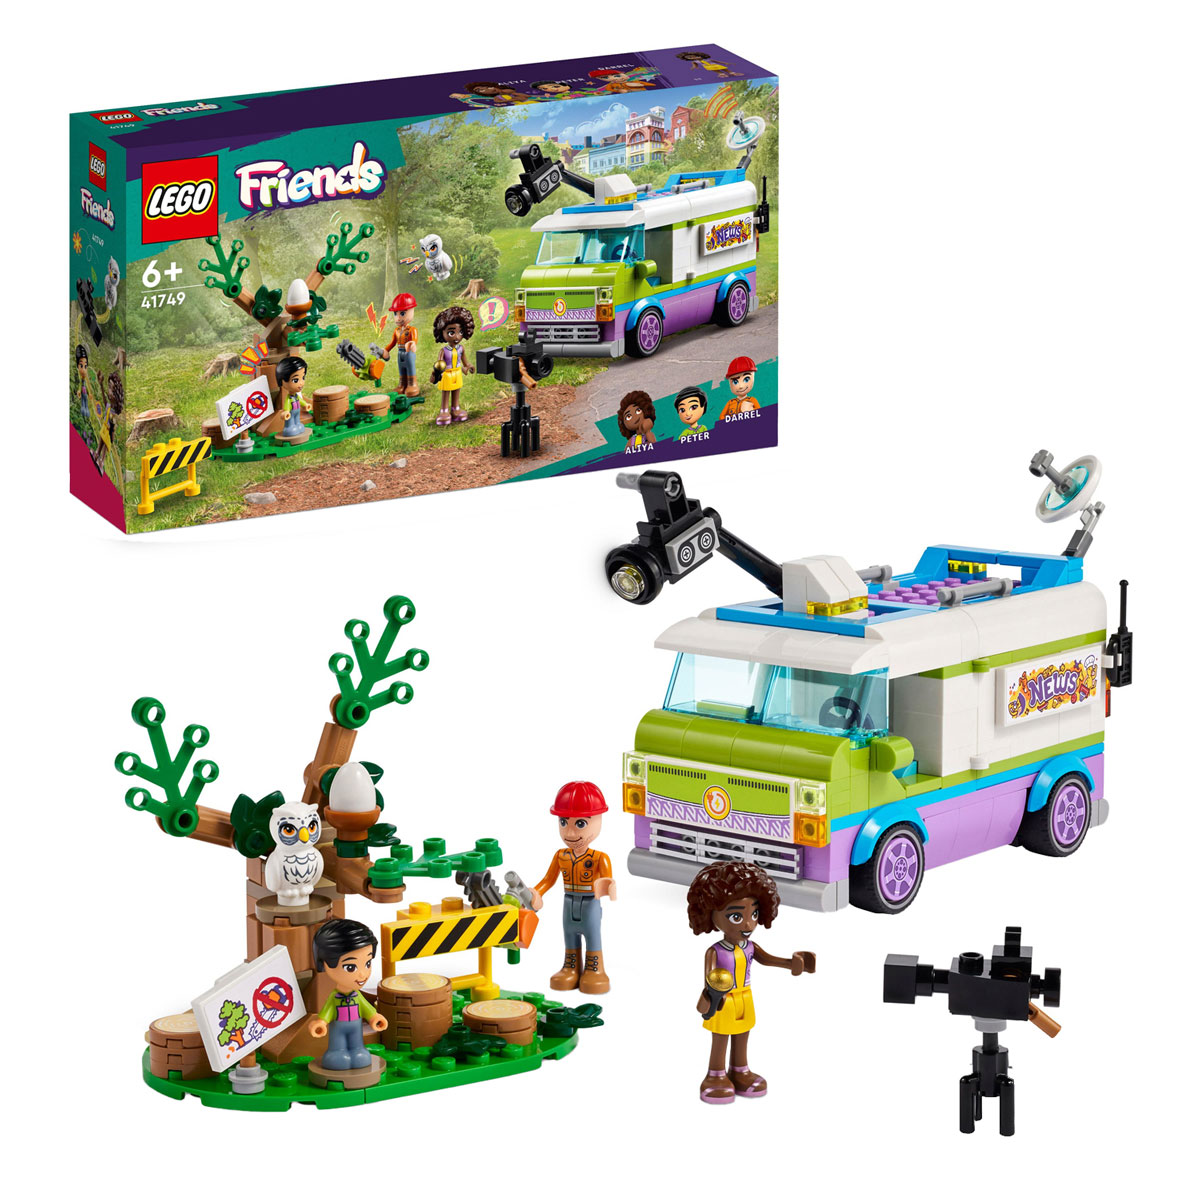 LEGO Friends 41749 La camionnette de presse